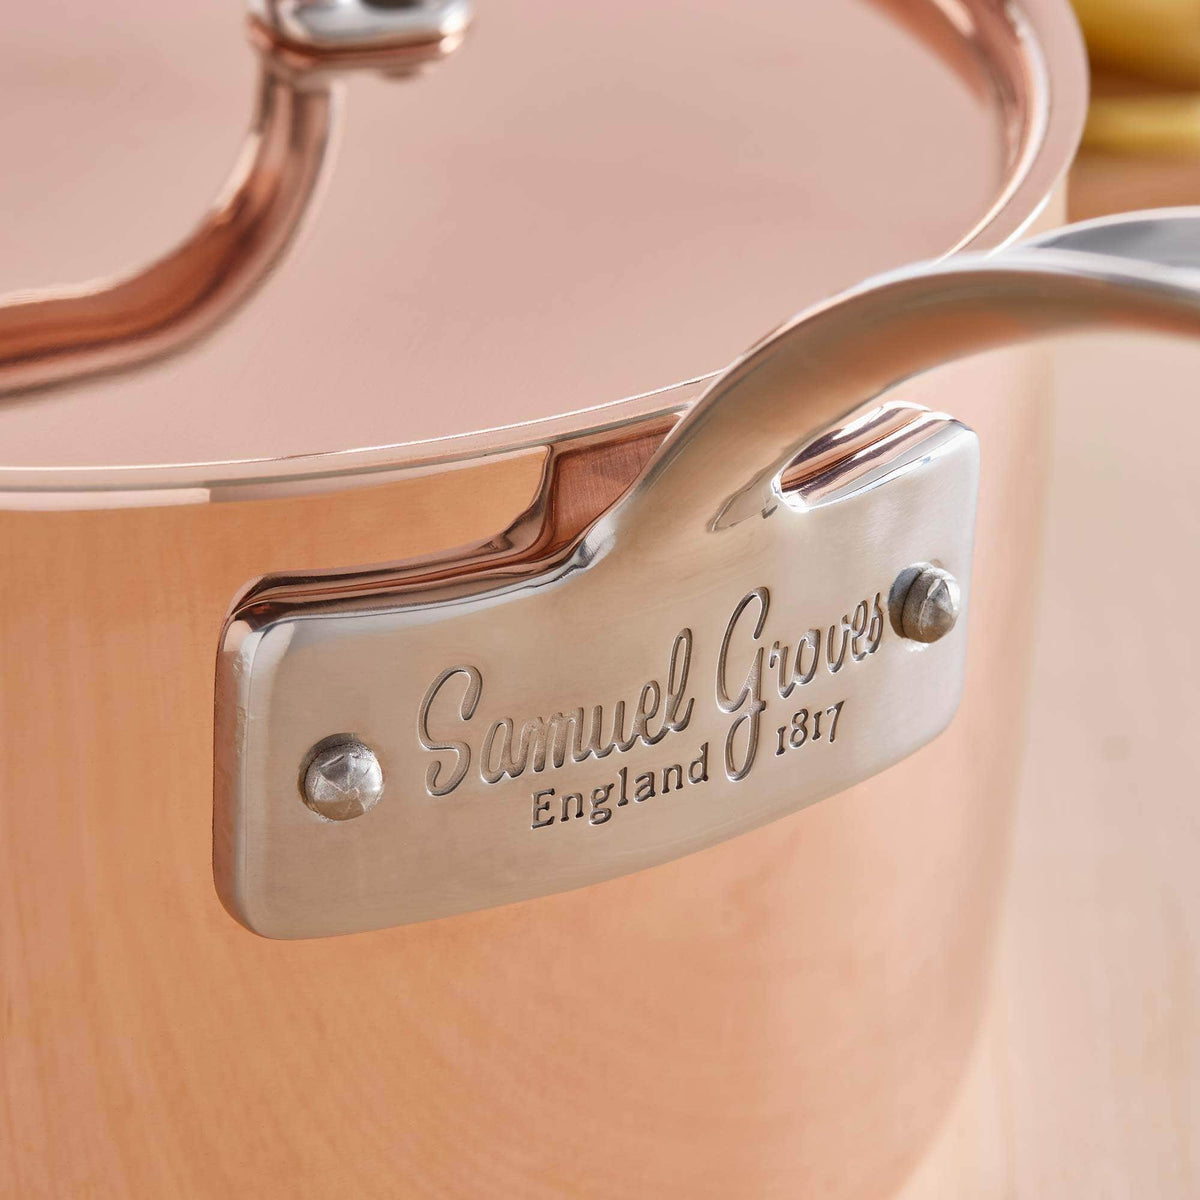 *Not Quite Perfect* 16 cm Copper saucepan &amp; lid